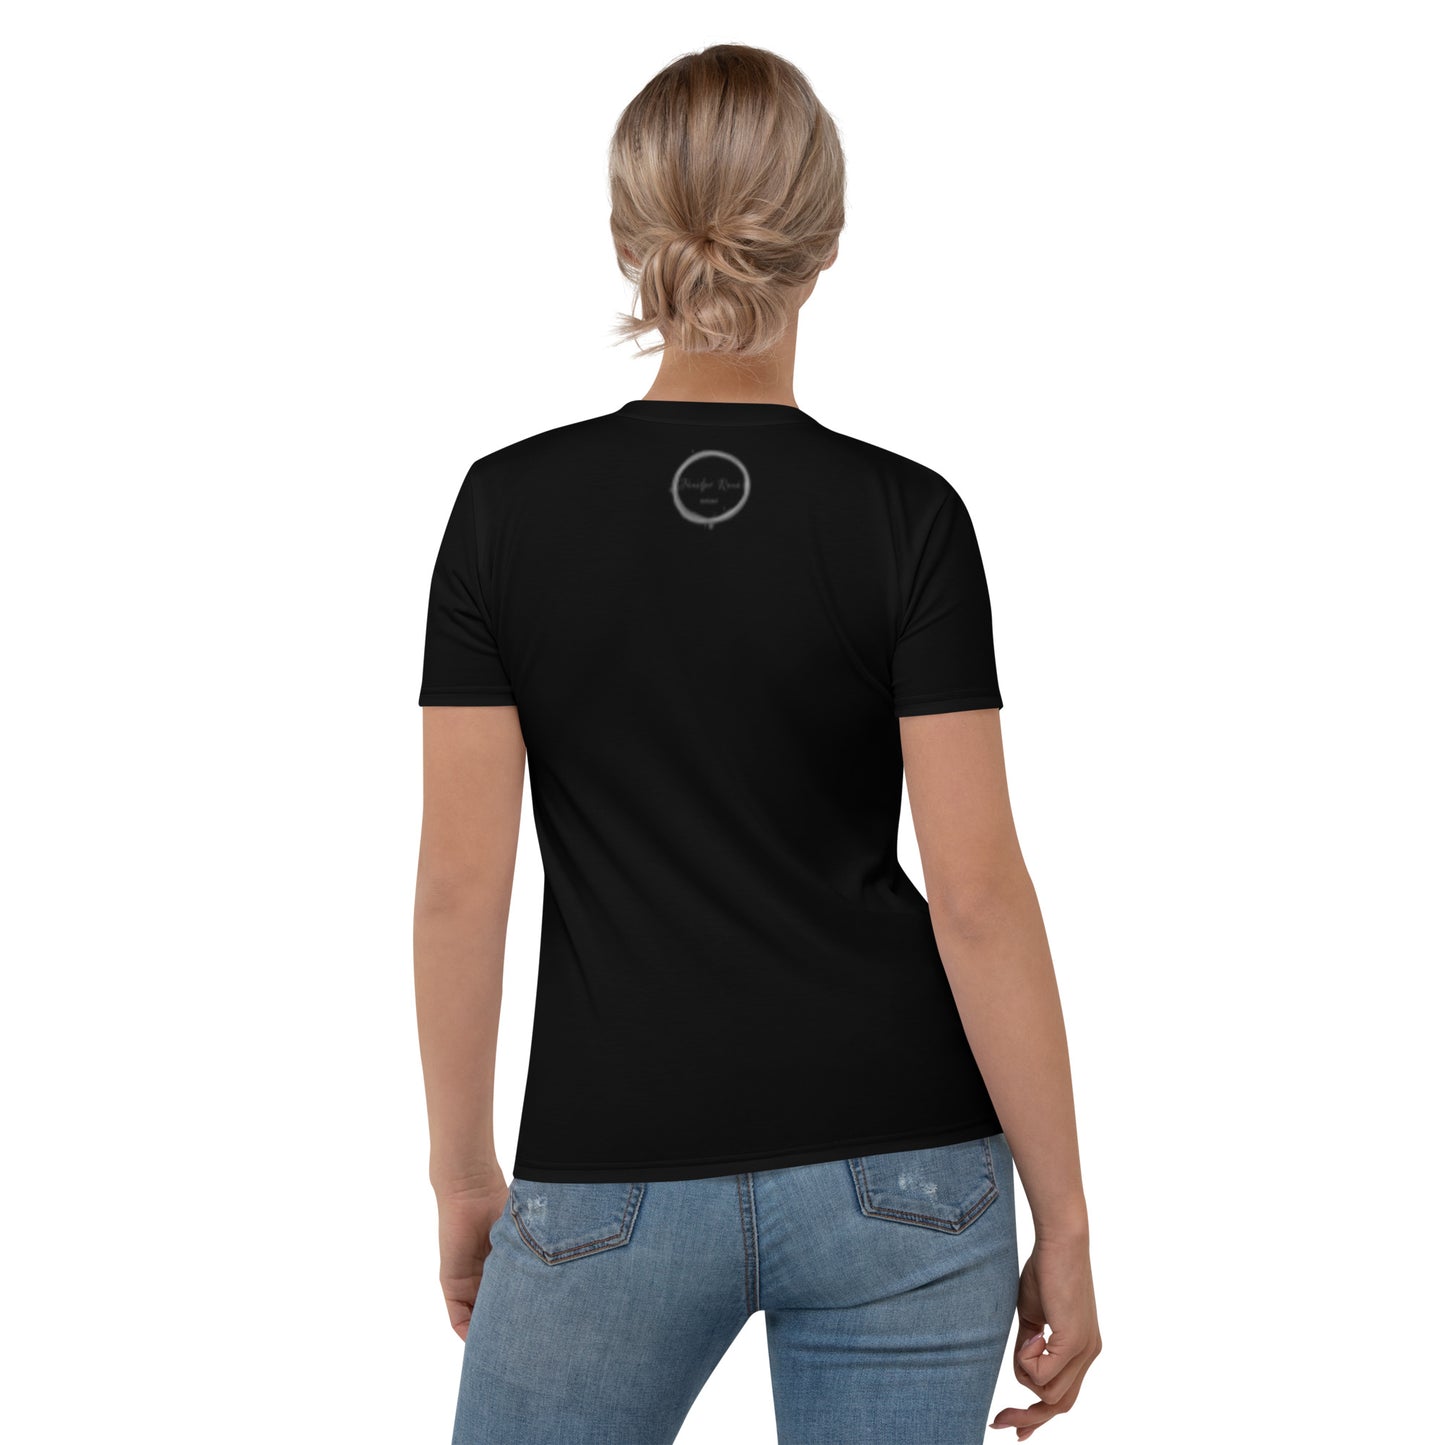 T-shirt noir pour femme - Comme dans un rêve